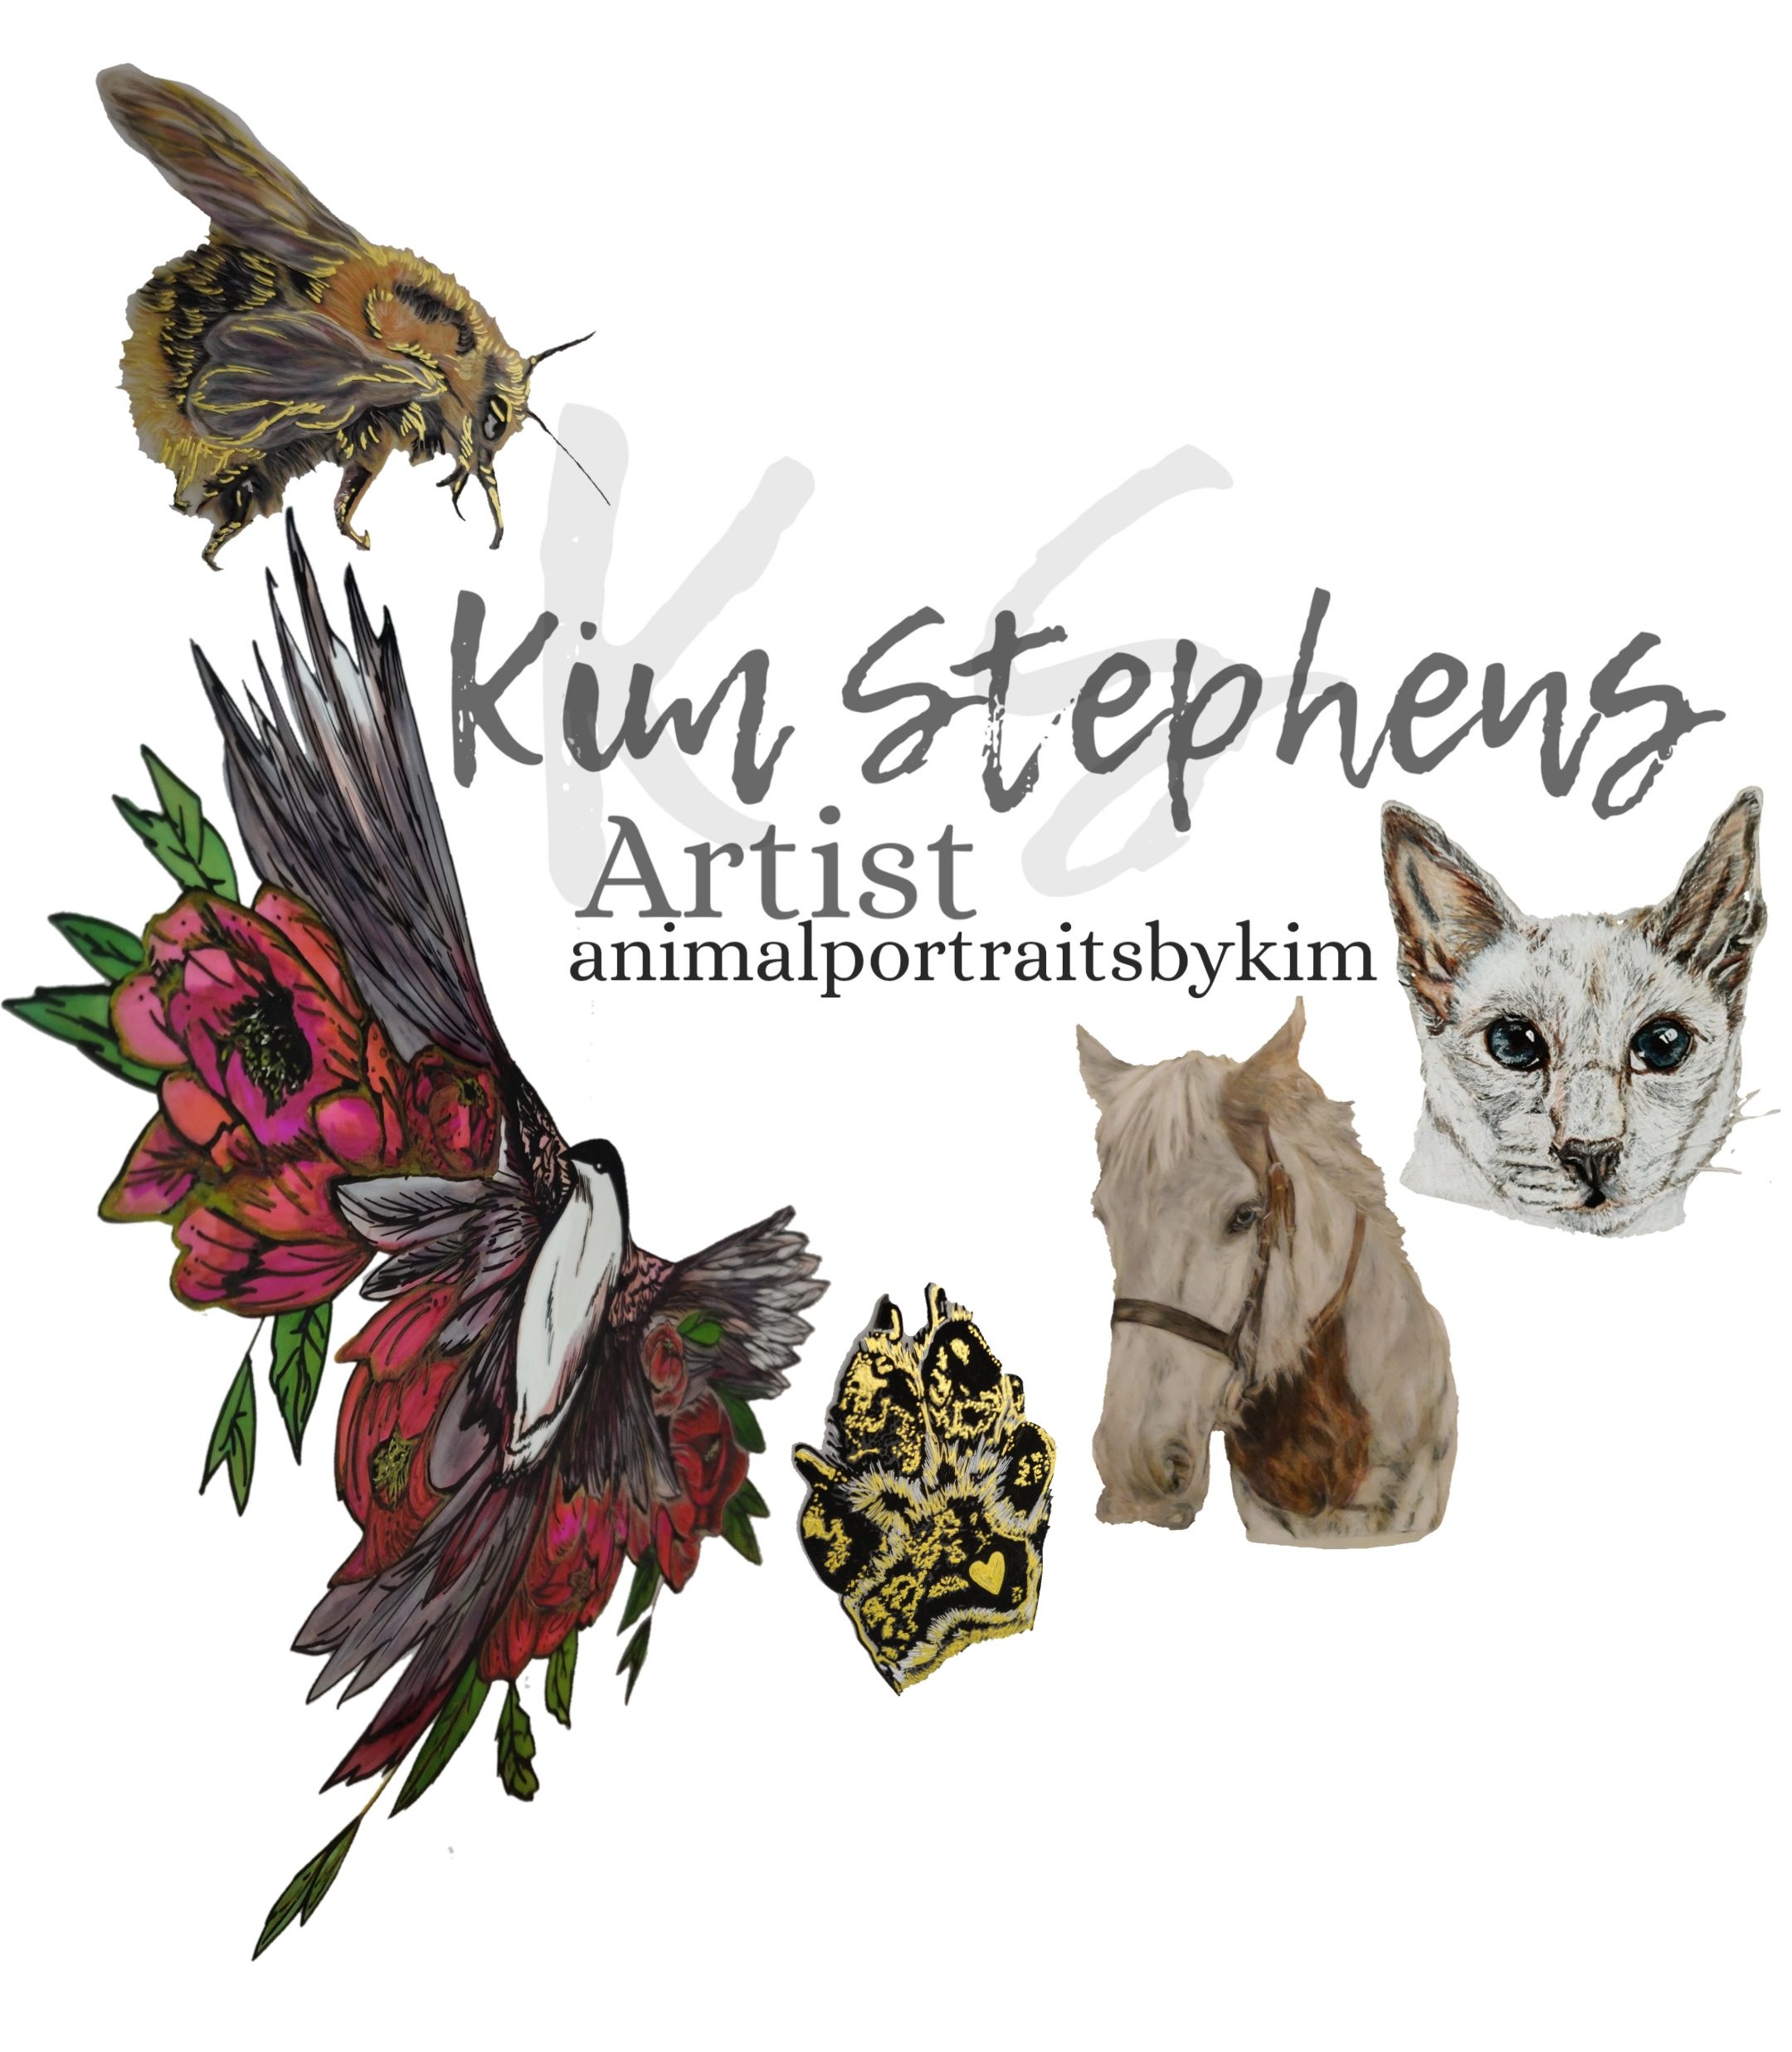 Animal portraits by Kim